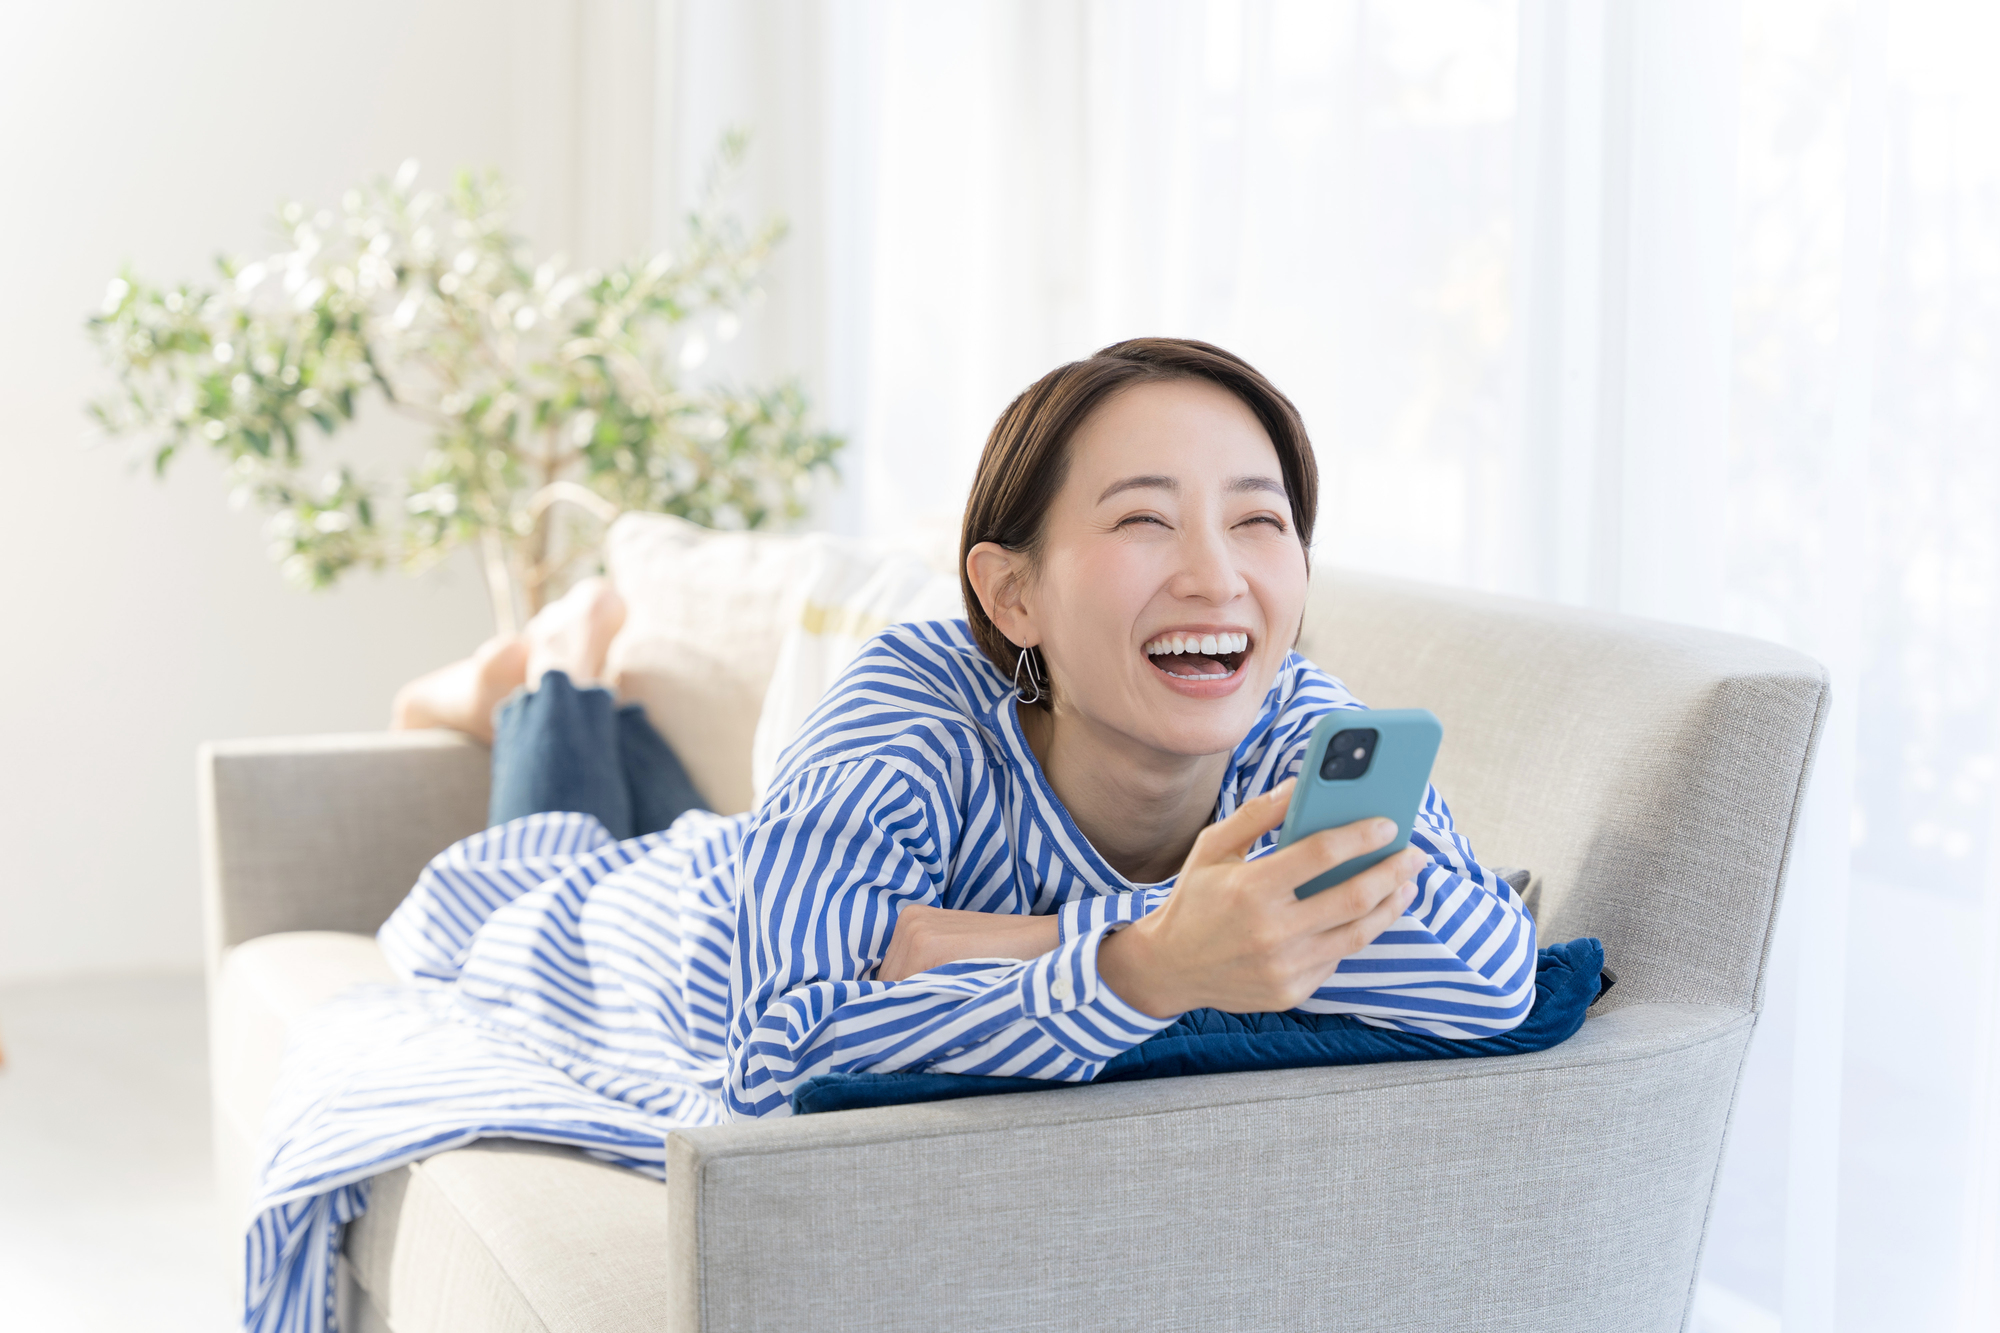 ソファーでスマートフォンをみている笑顔の女性